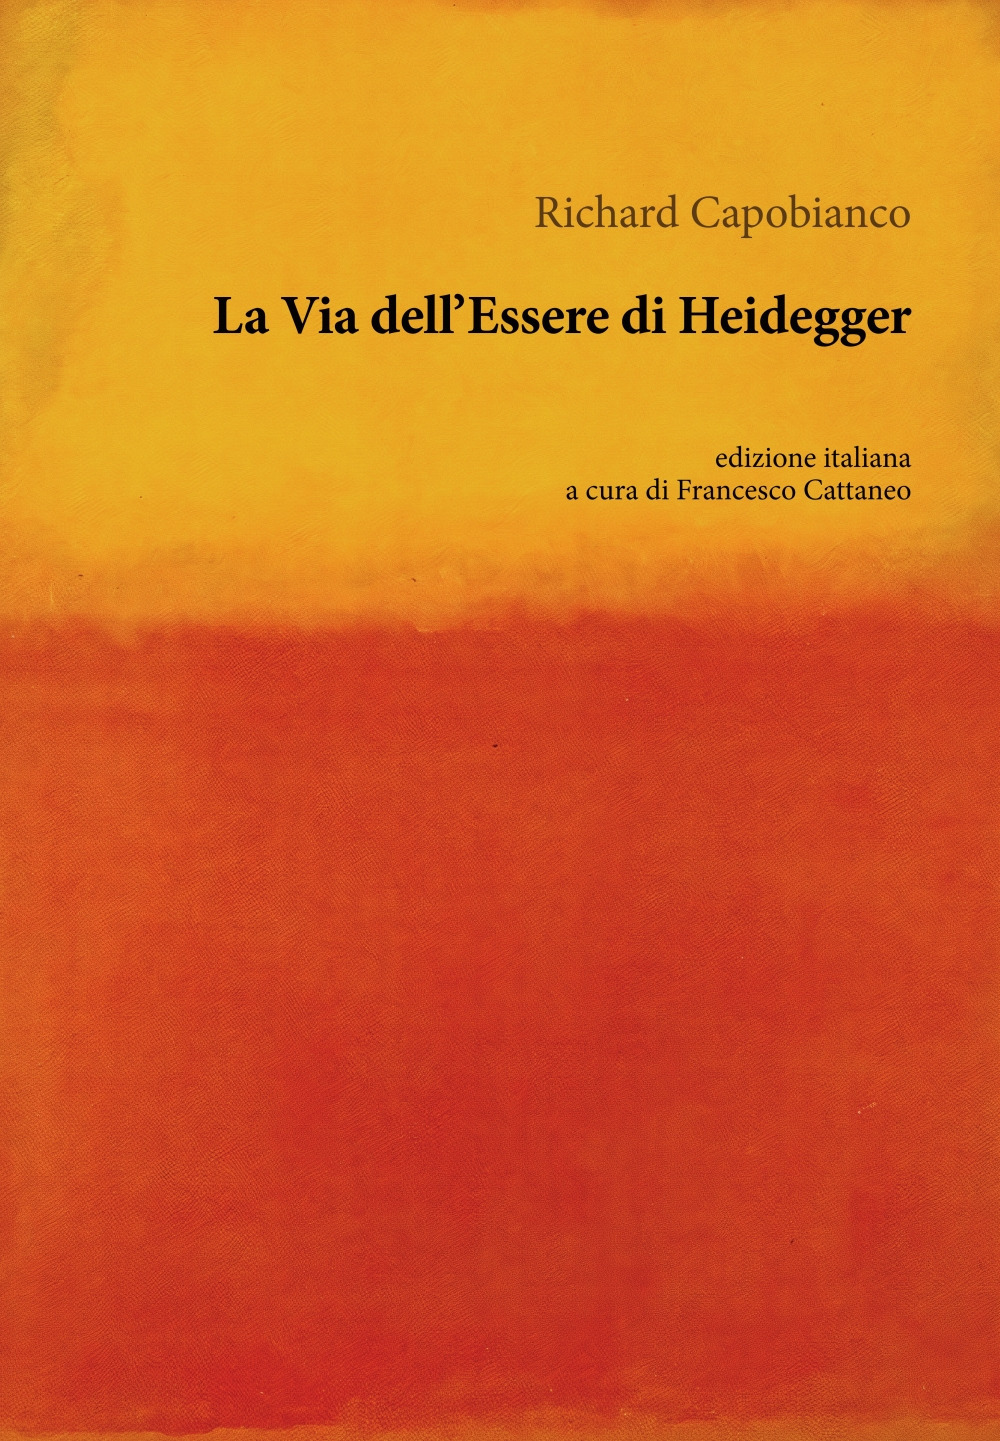 La via dell'essere di Heidegger